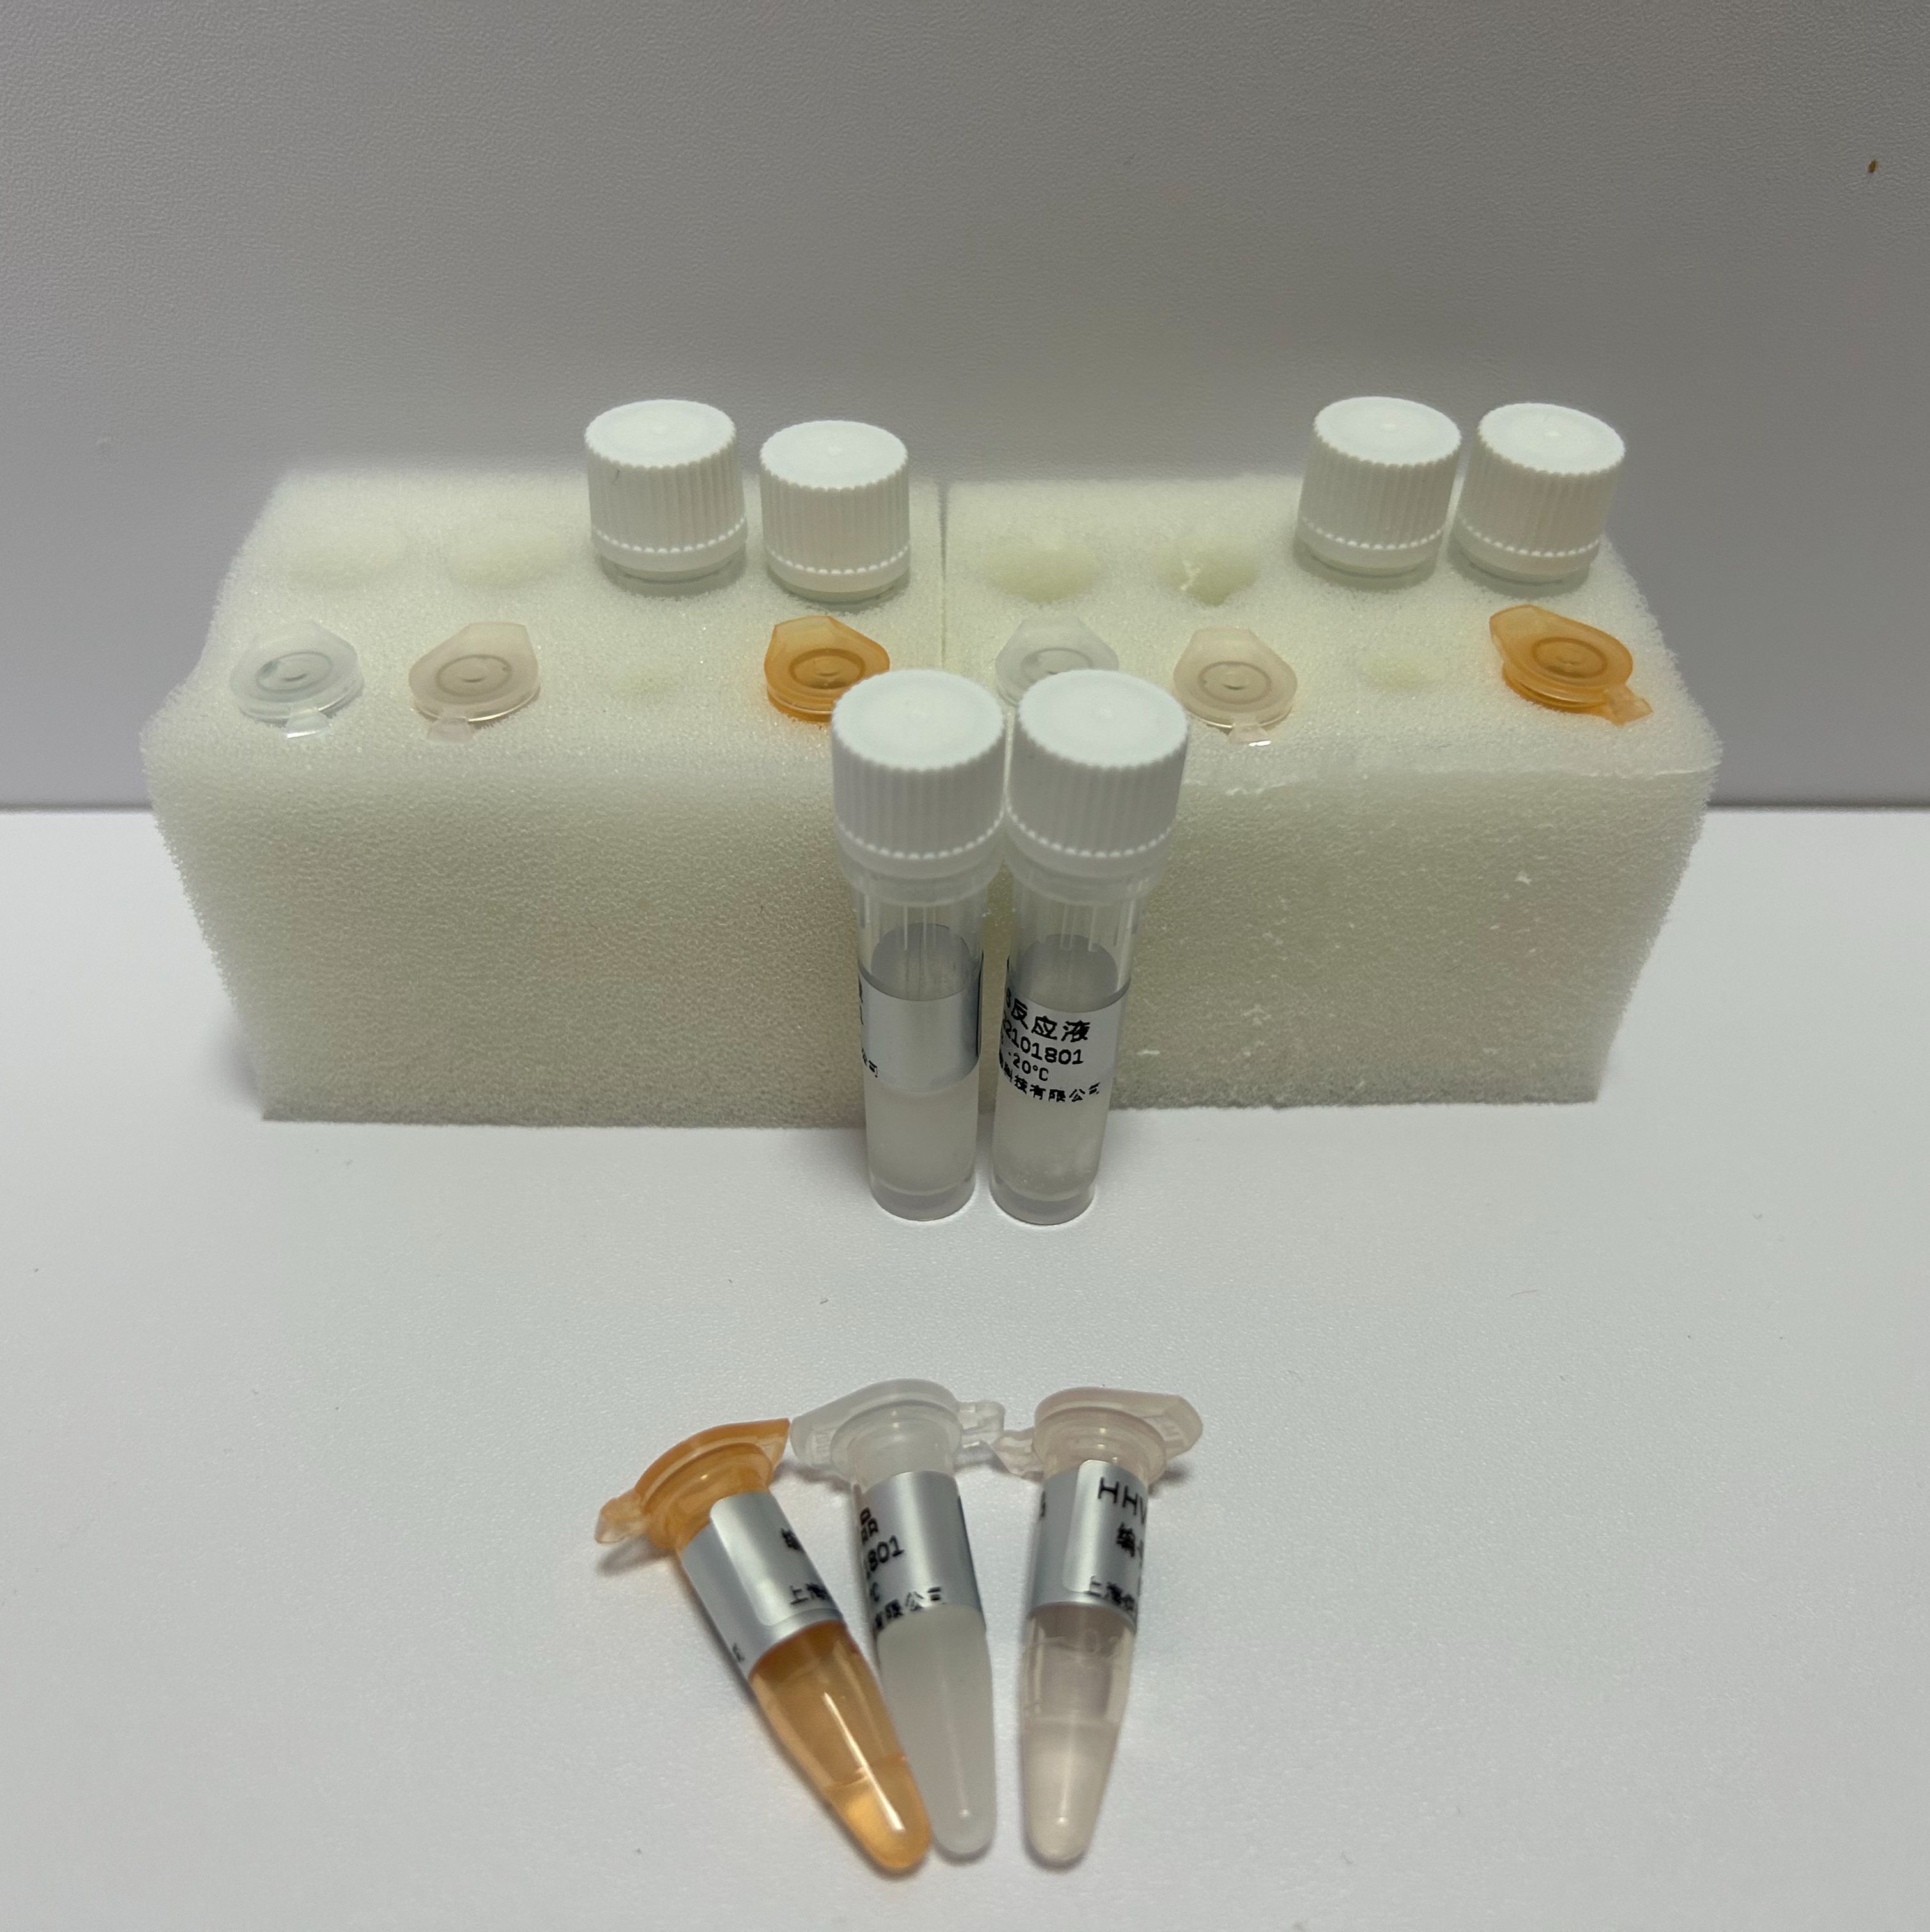 人腺病毒B16型探针法荧光定量PCR试剂盒